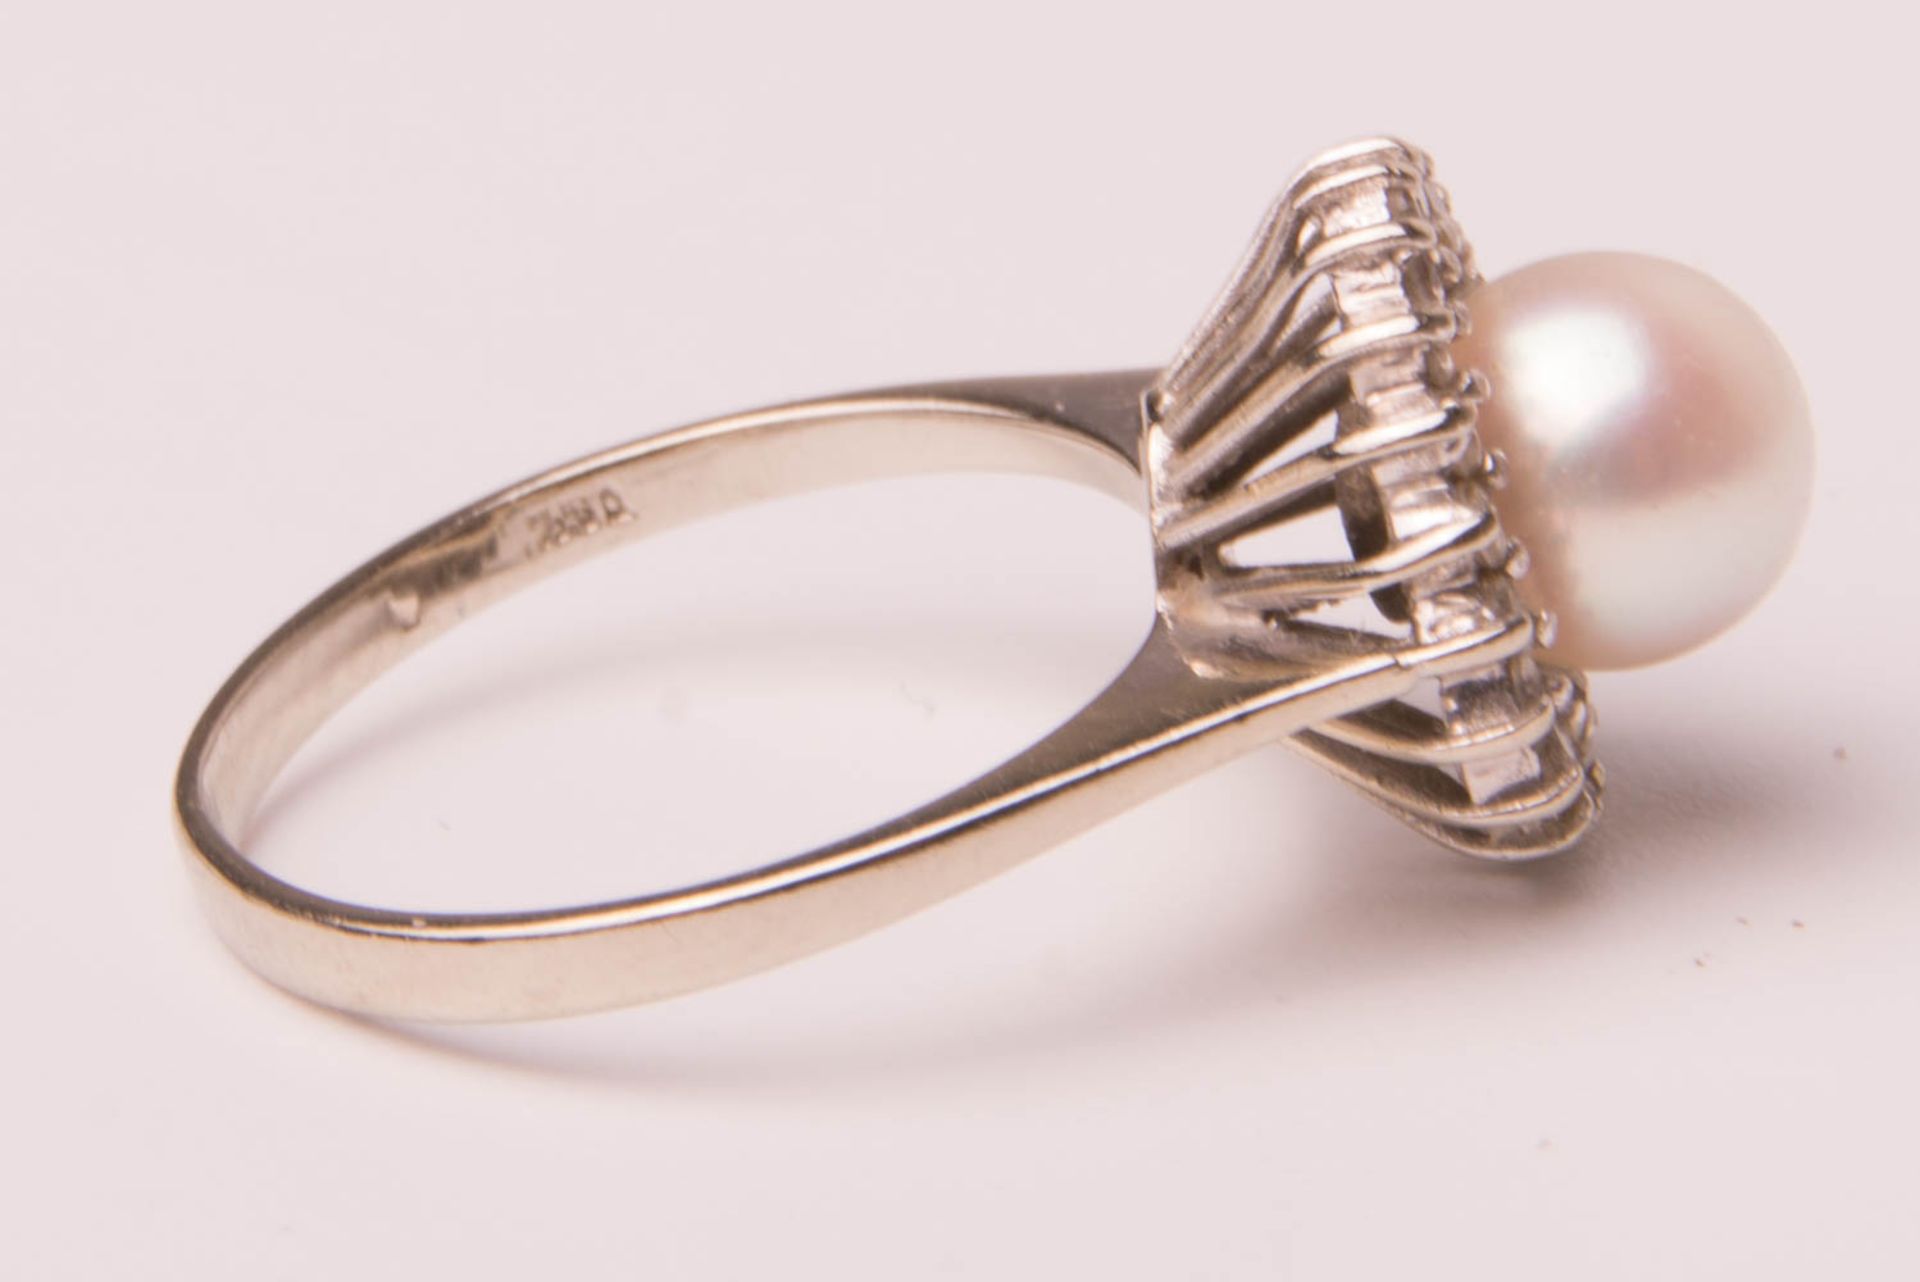 Armband und Ring mit Perle, 585/750er Weißgold. - Bild 3 aus 6